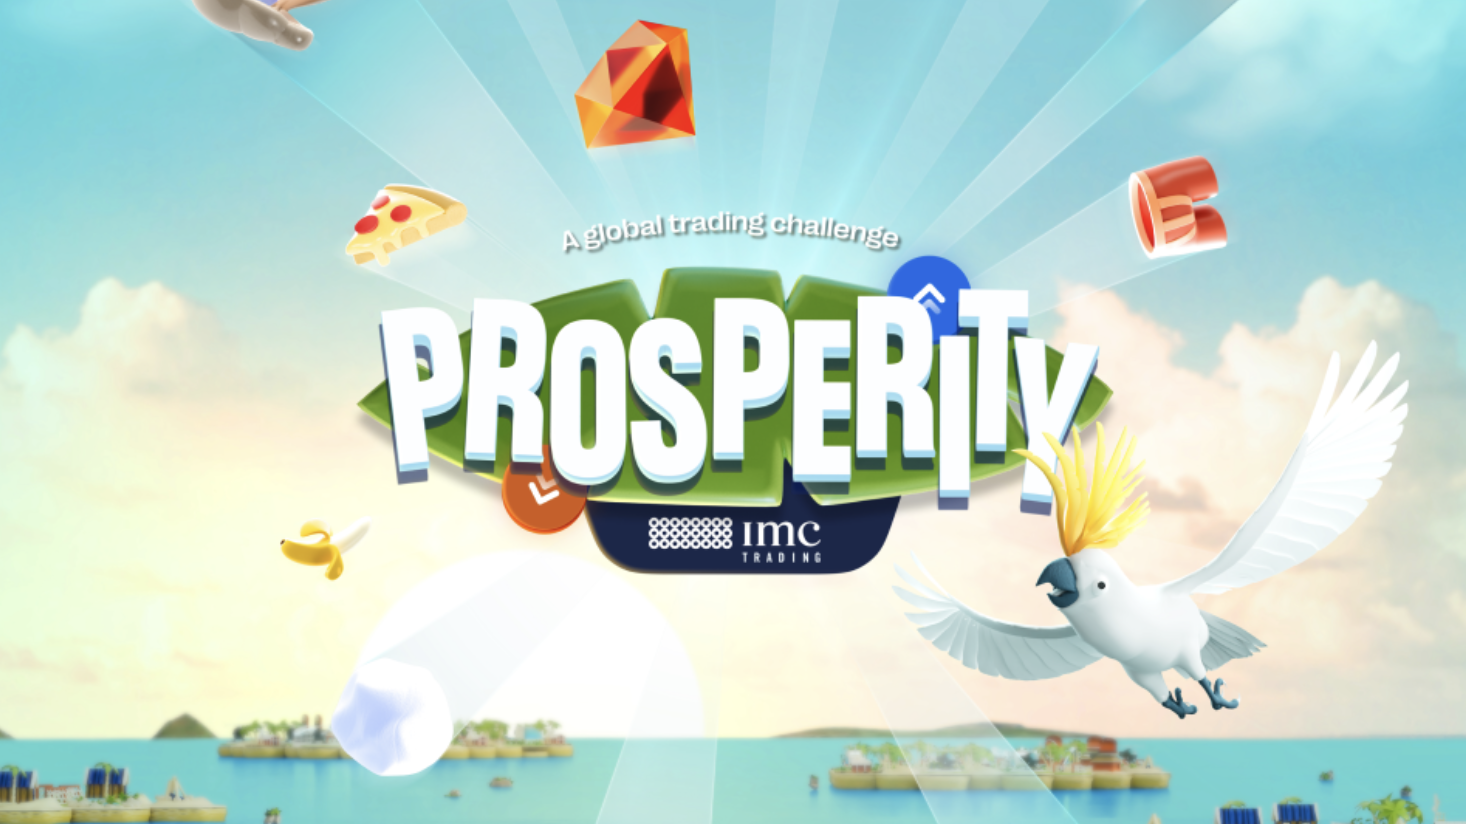 IMC lanceert campagne ‘Prosperity’ voor aantrekken nieuw trading talent